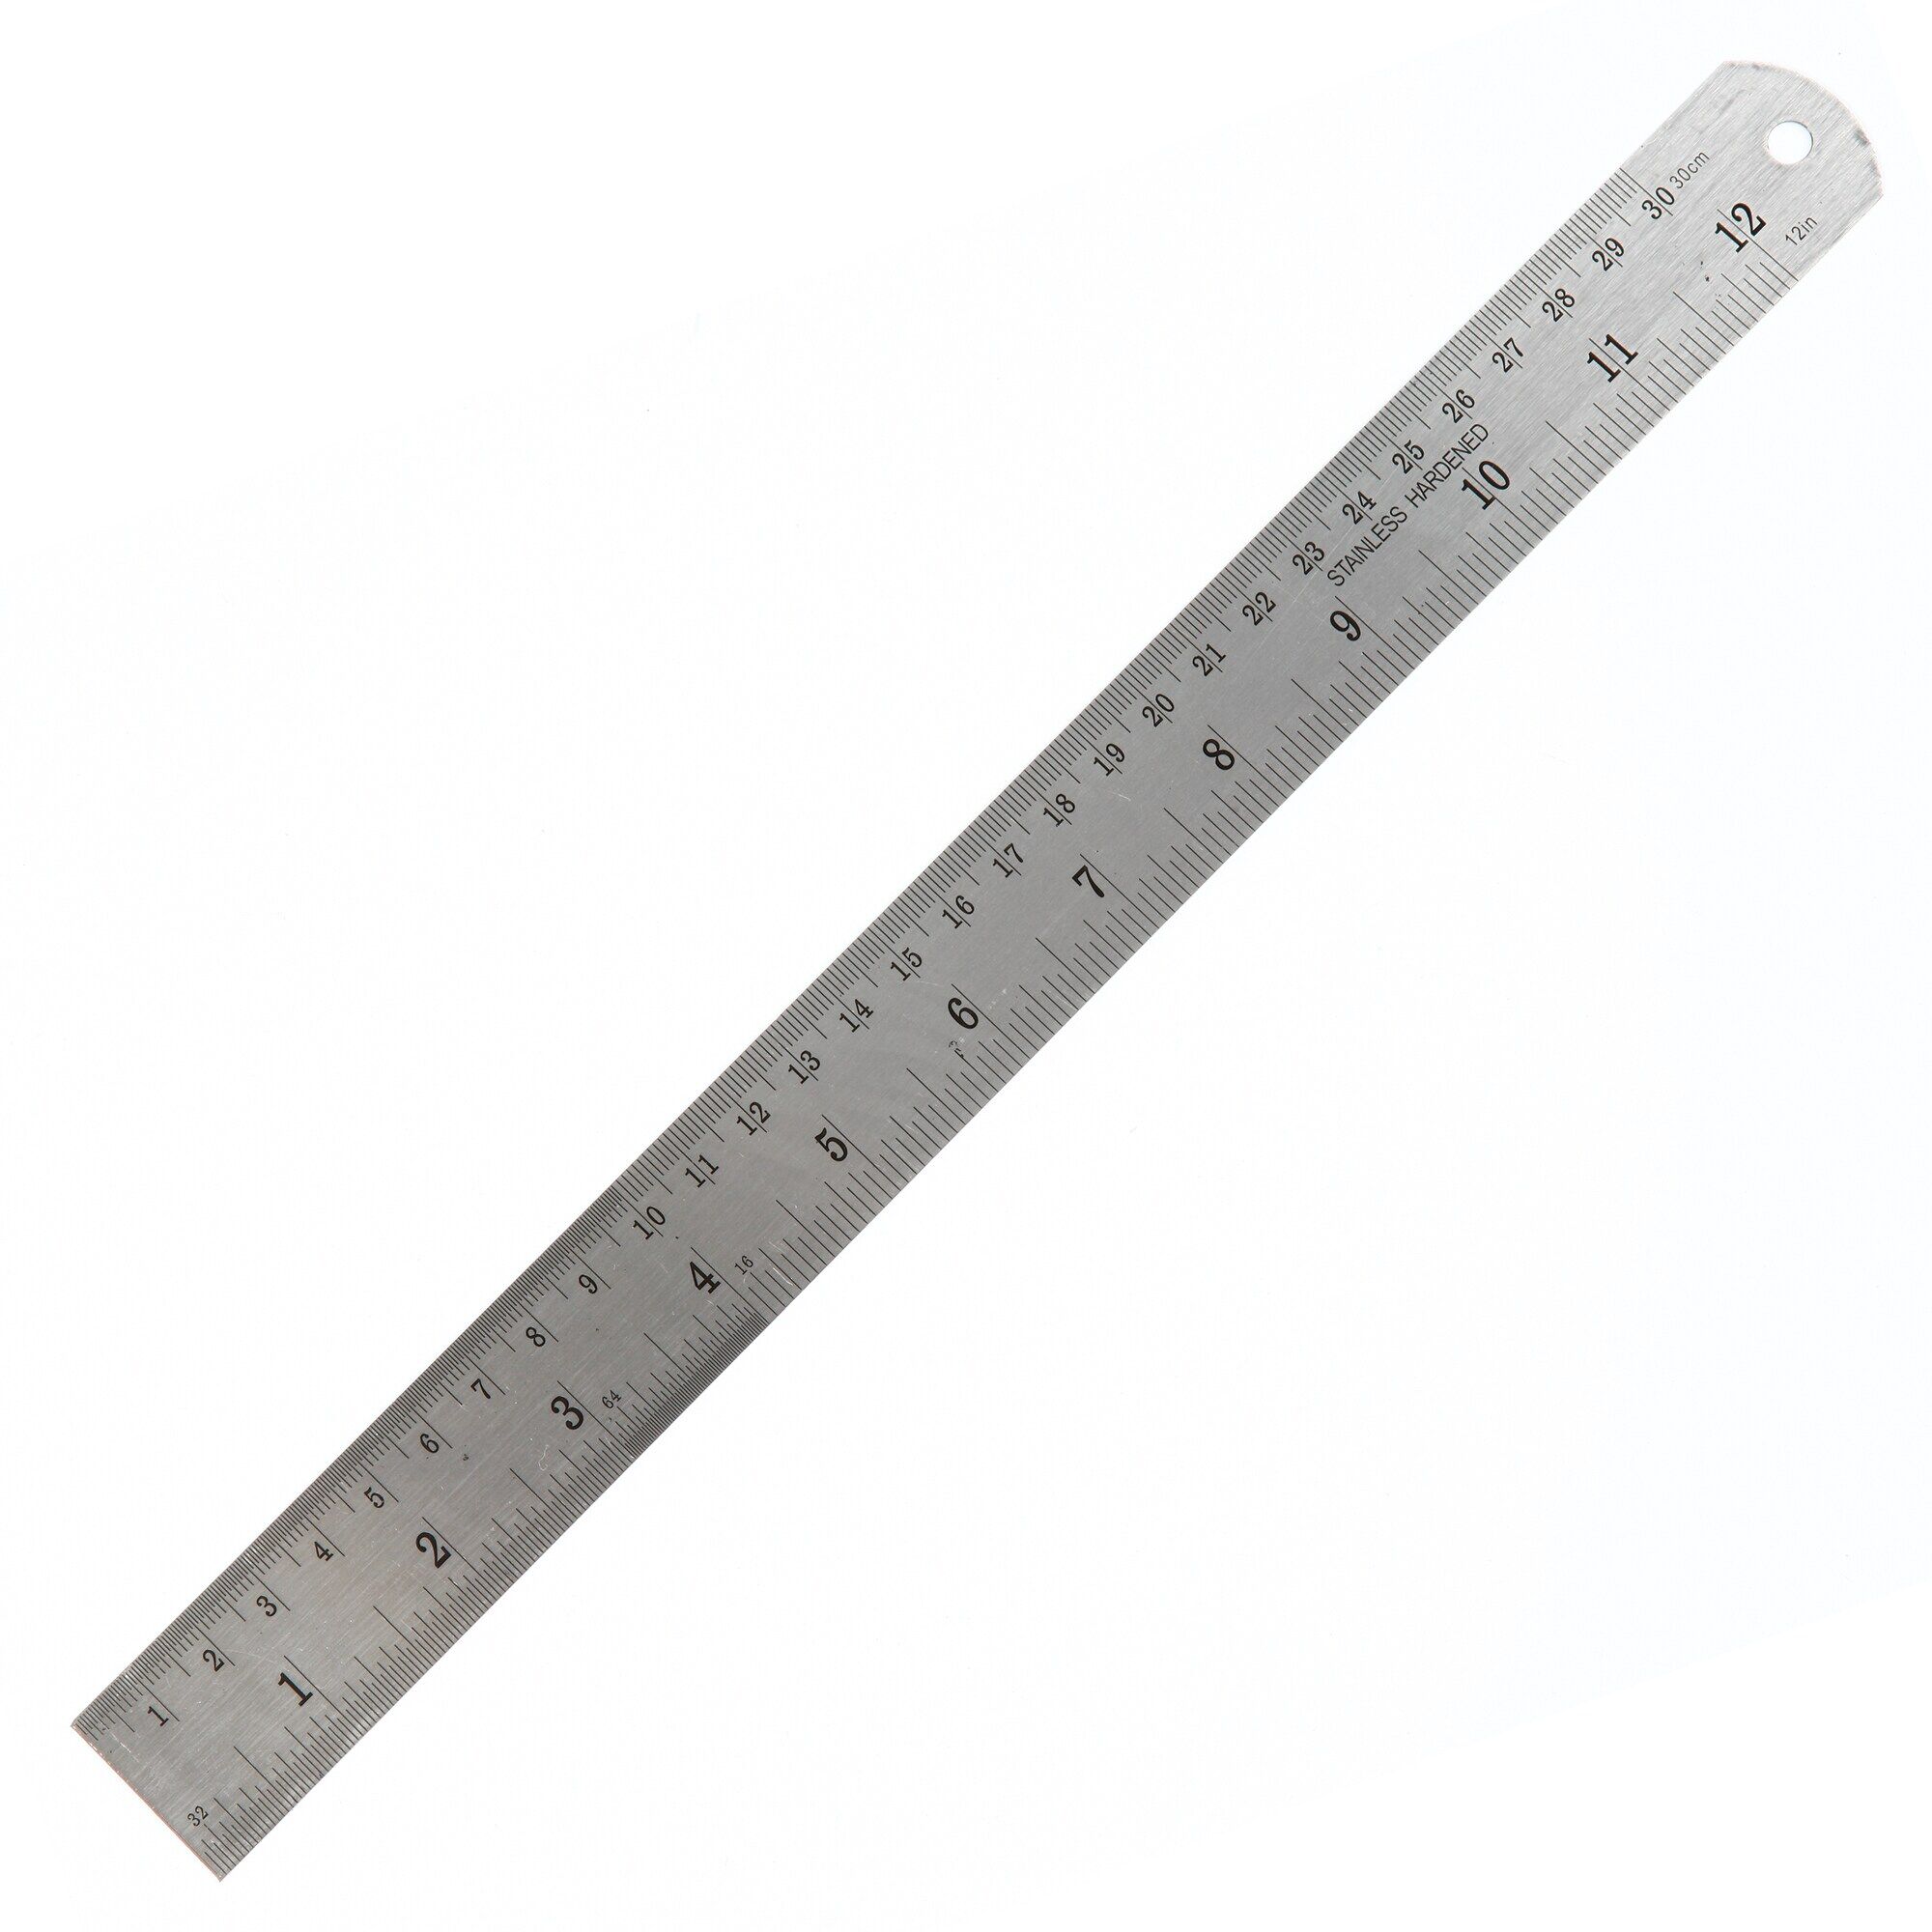 ไม้บรรทัด ฟุตเหล็ก 12 นิ้ว sck  Metal ruler 12 inches sck